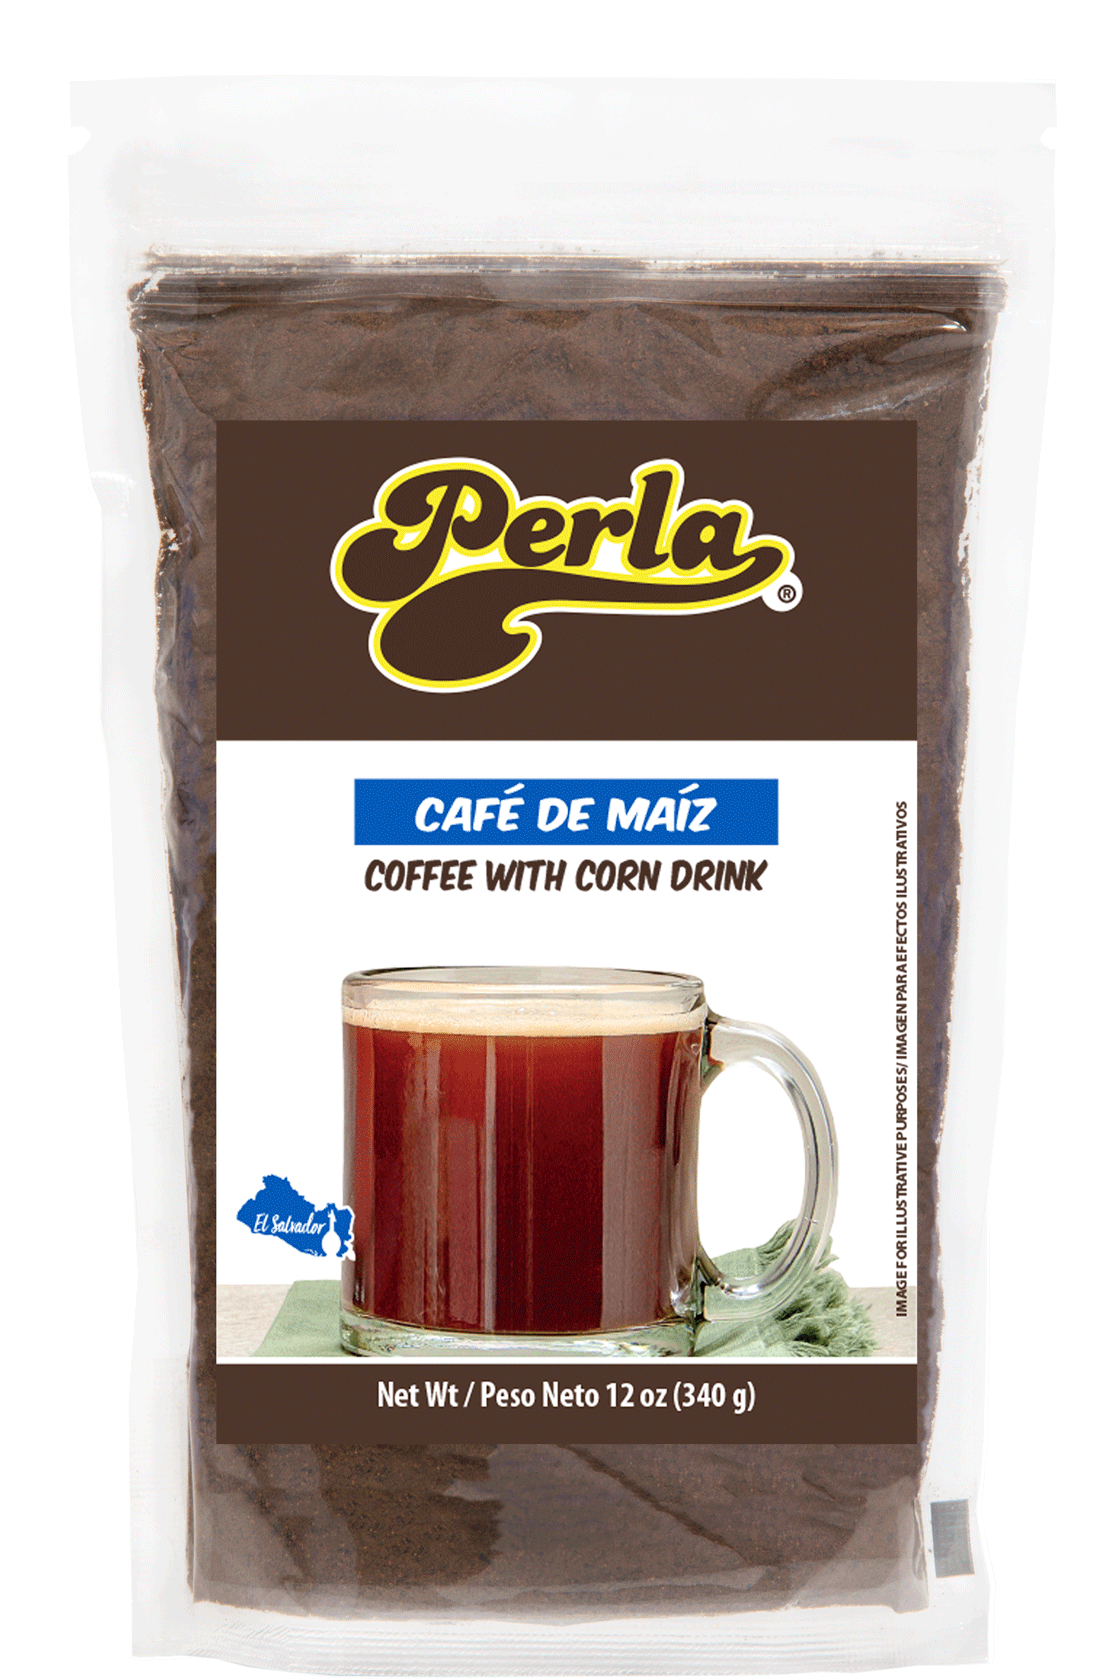 Perla Café de la abuela, Cafe de Maiz Salvadoreno (Coffee with Corn Drink) 12 oz